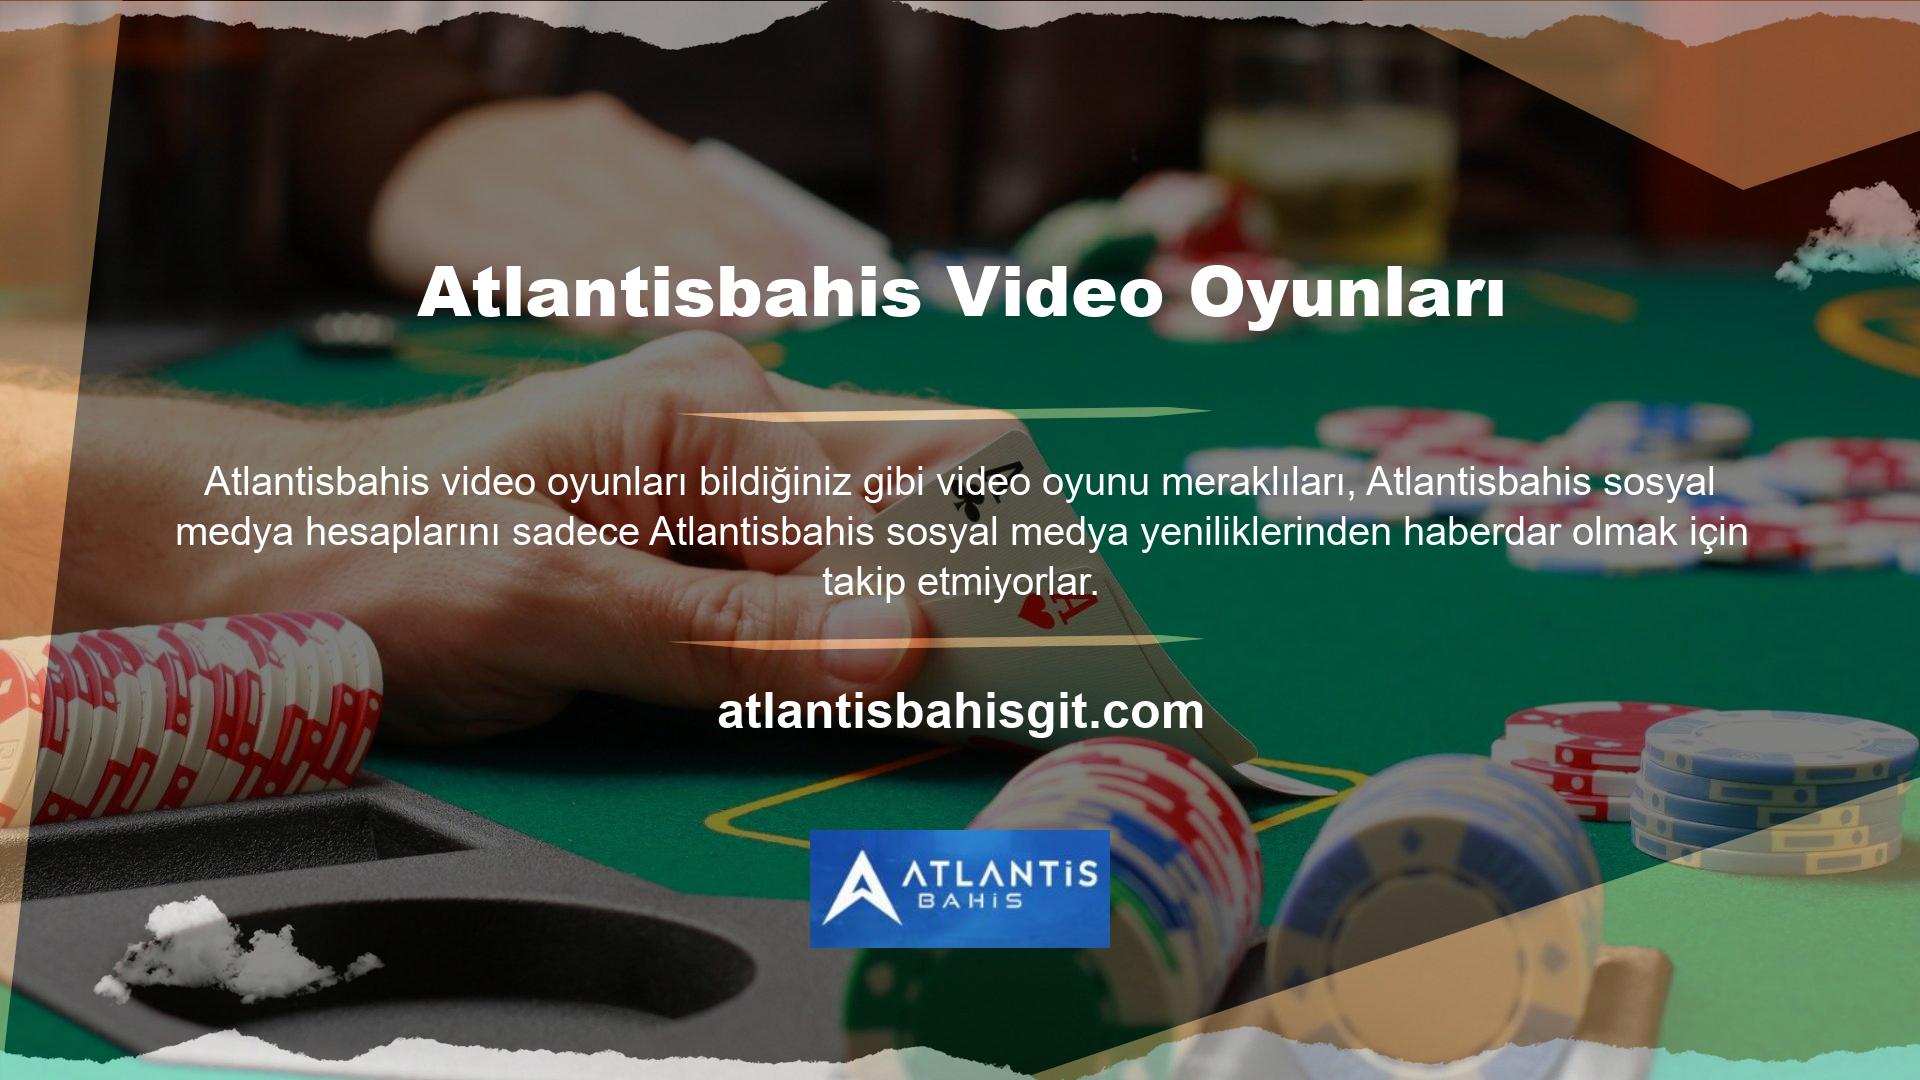 Ayrıca Atlantisbahis Twitter hesabında ve çeşitli sosyal medya platformlarında da günün bahis oranları ve maçları gibi paylaşımlar yer alıyor